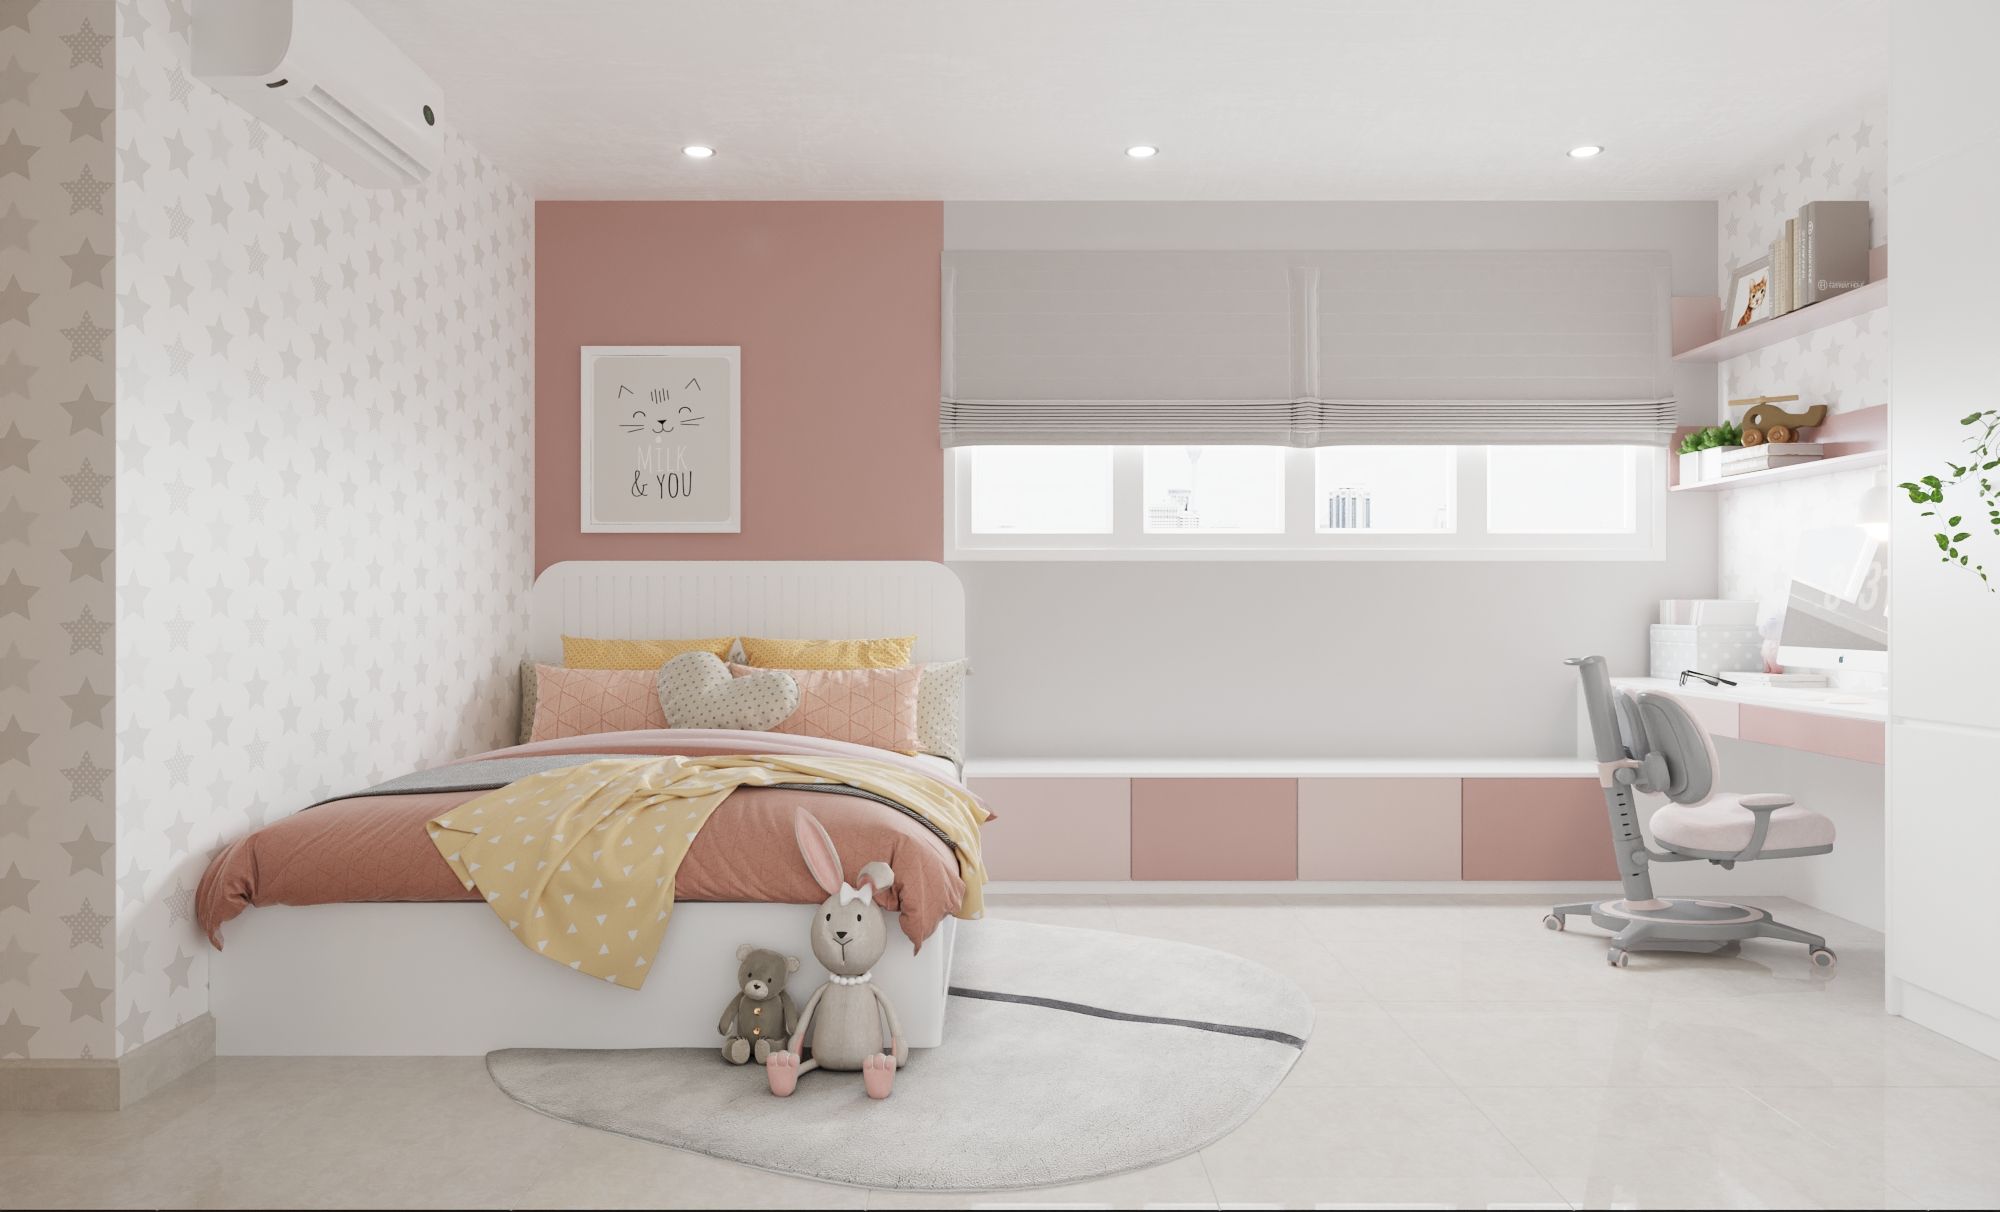 Thiết kế phòng ngủ bé với gam màu hồng nhạt và đậm xen kẽ nhau